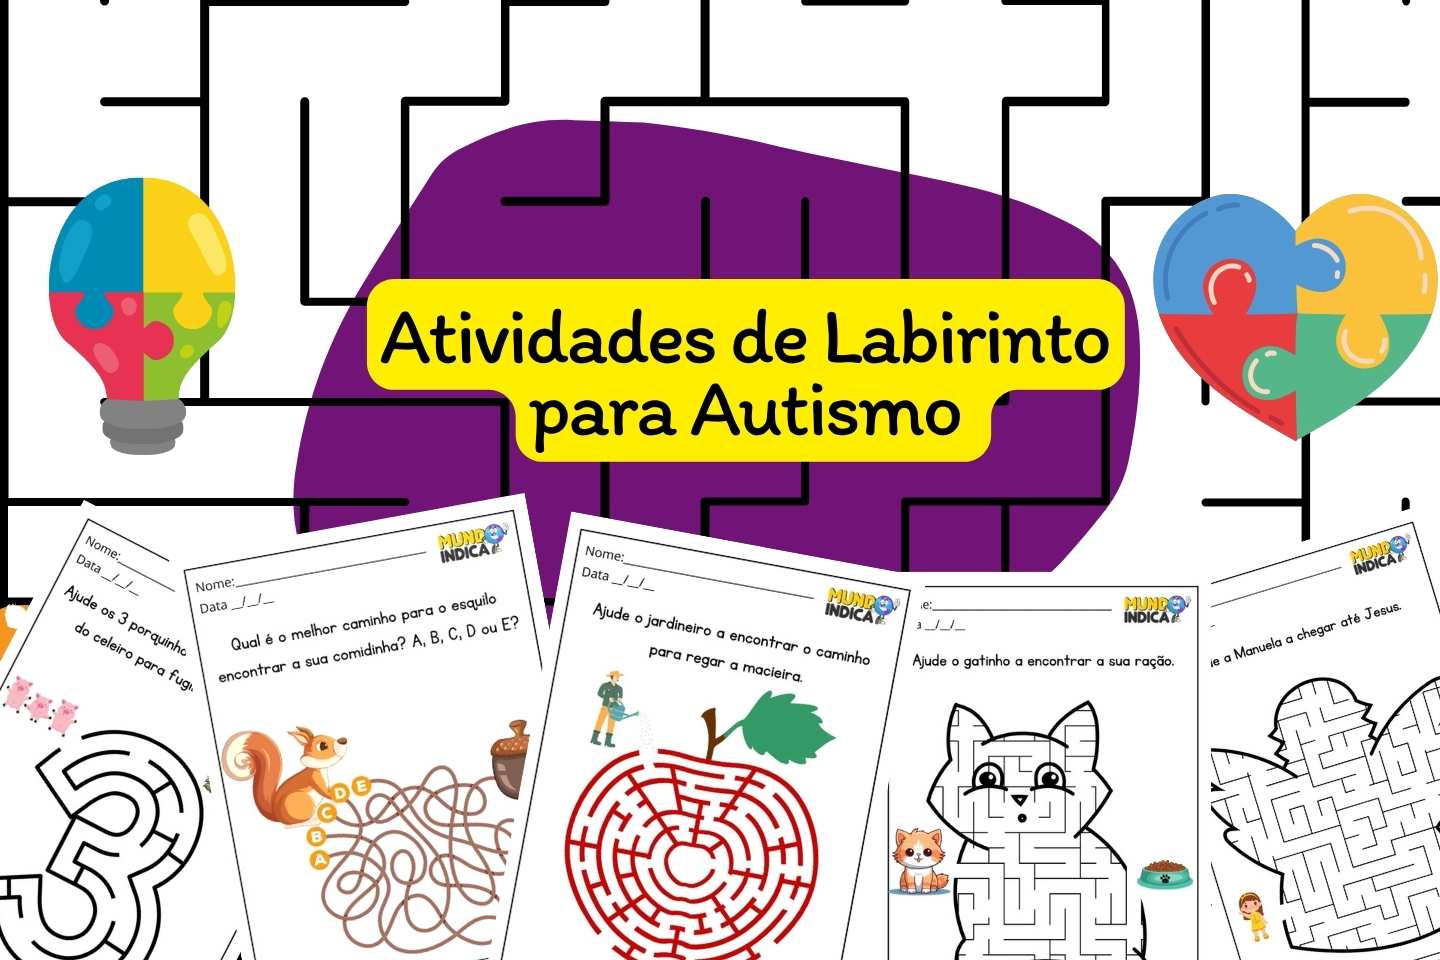 Atividades de Labirinto para Autismo